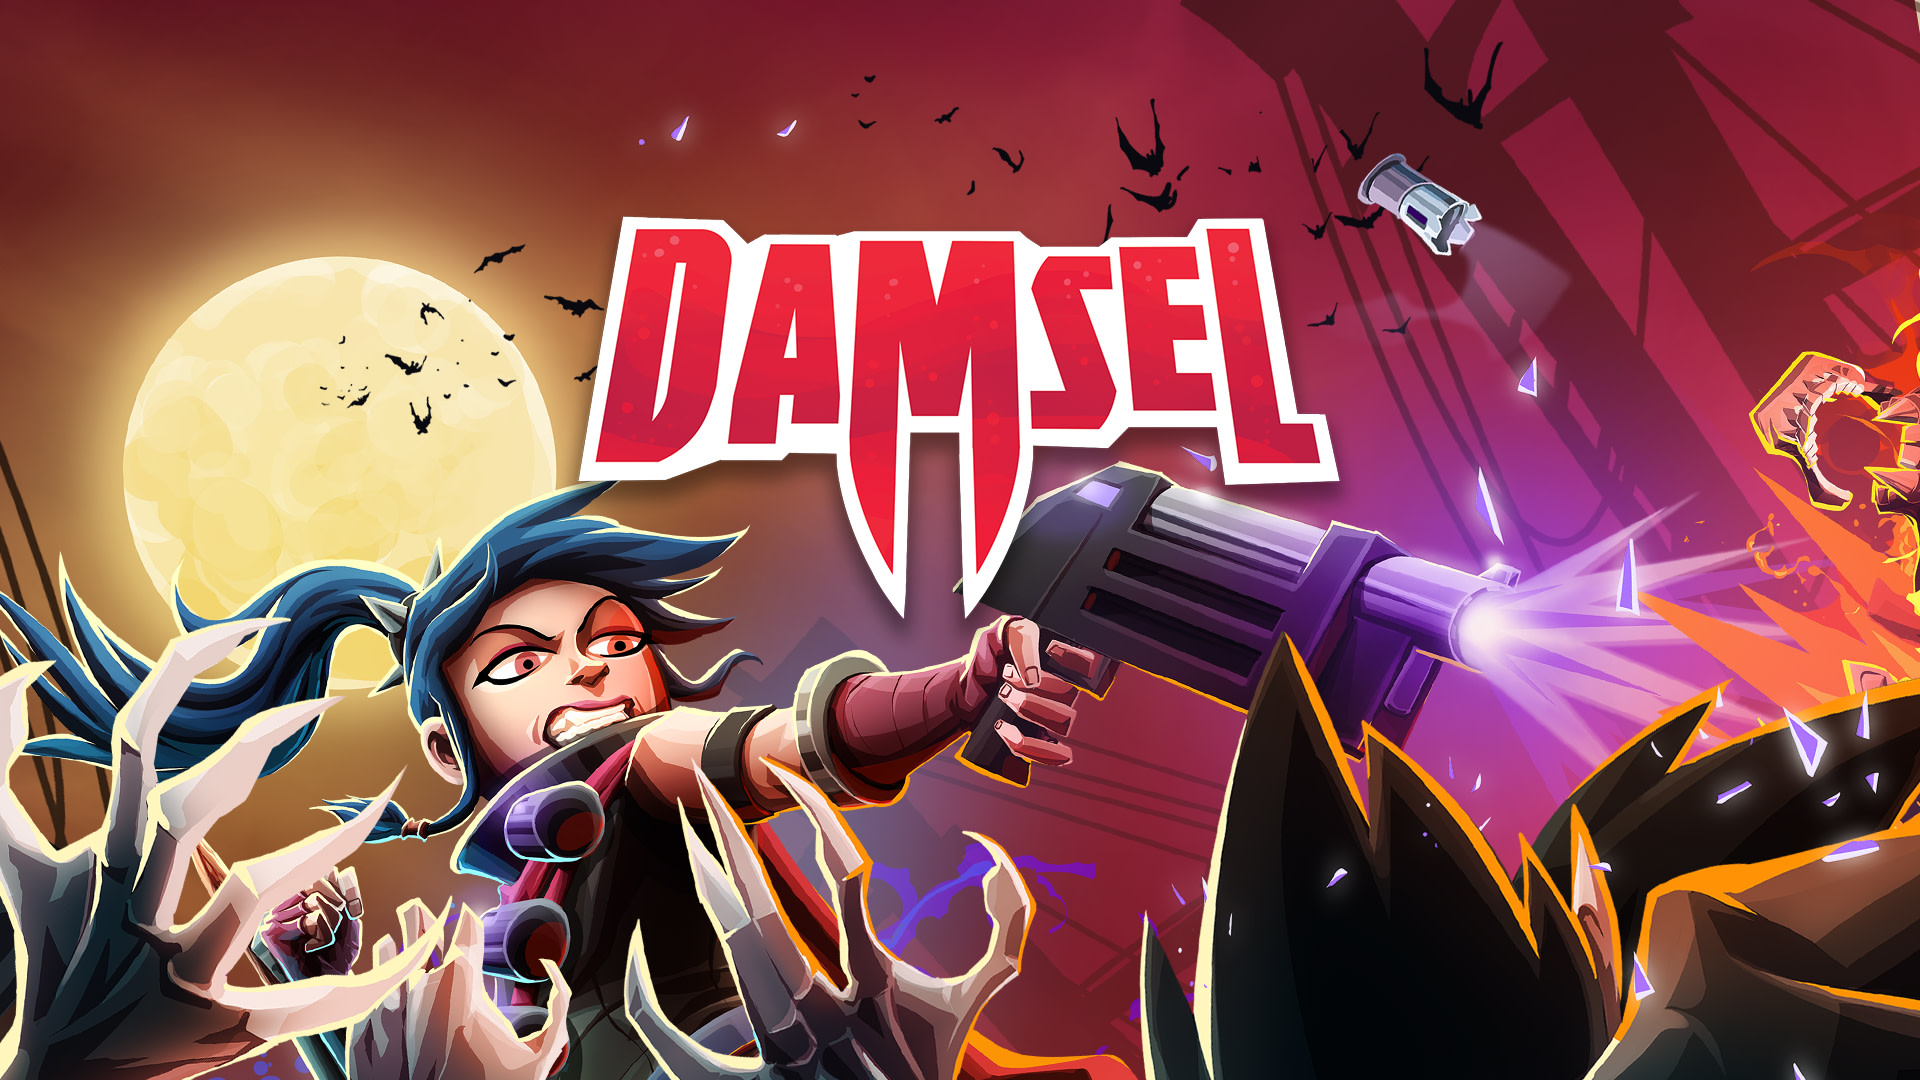 Damsel 